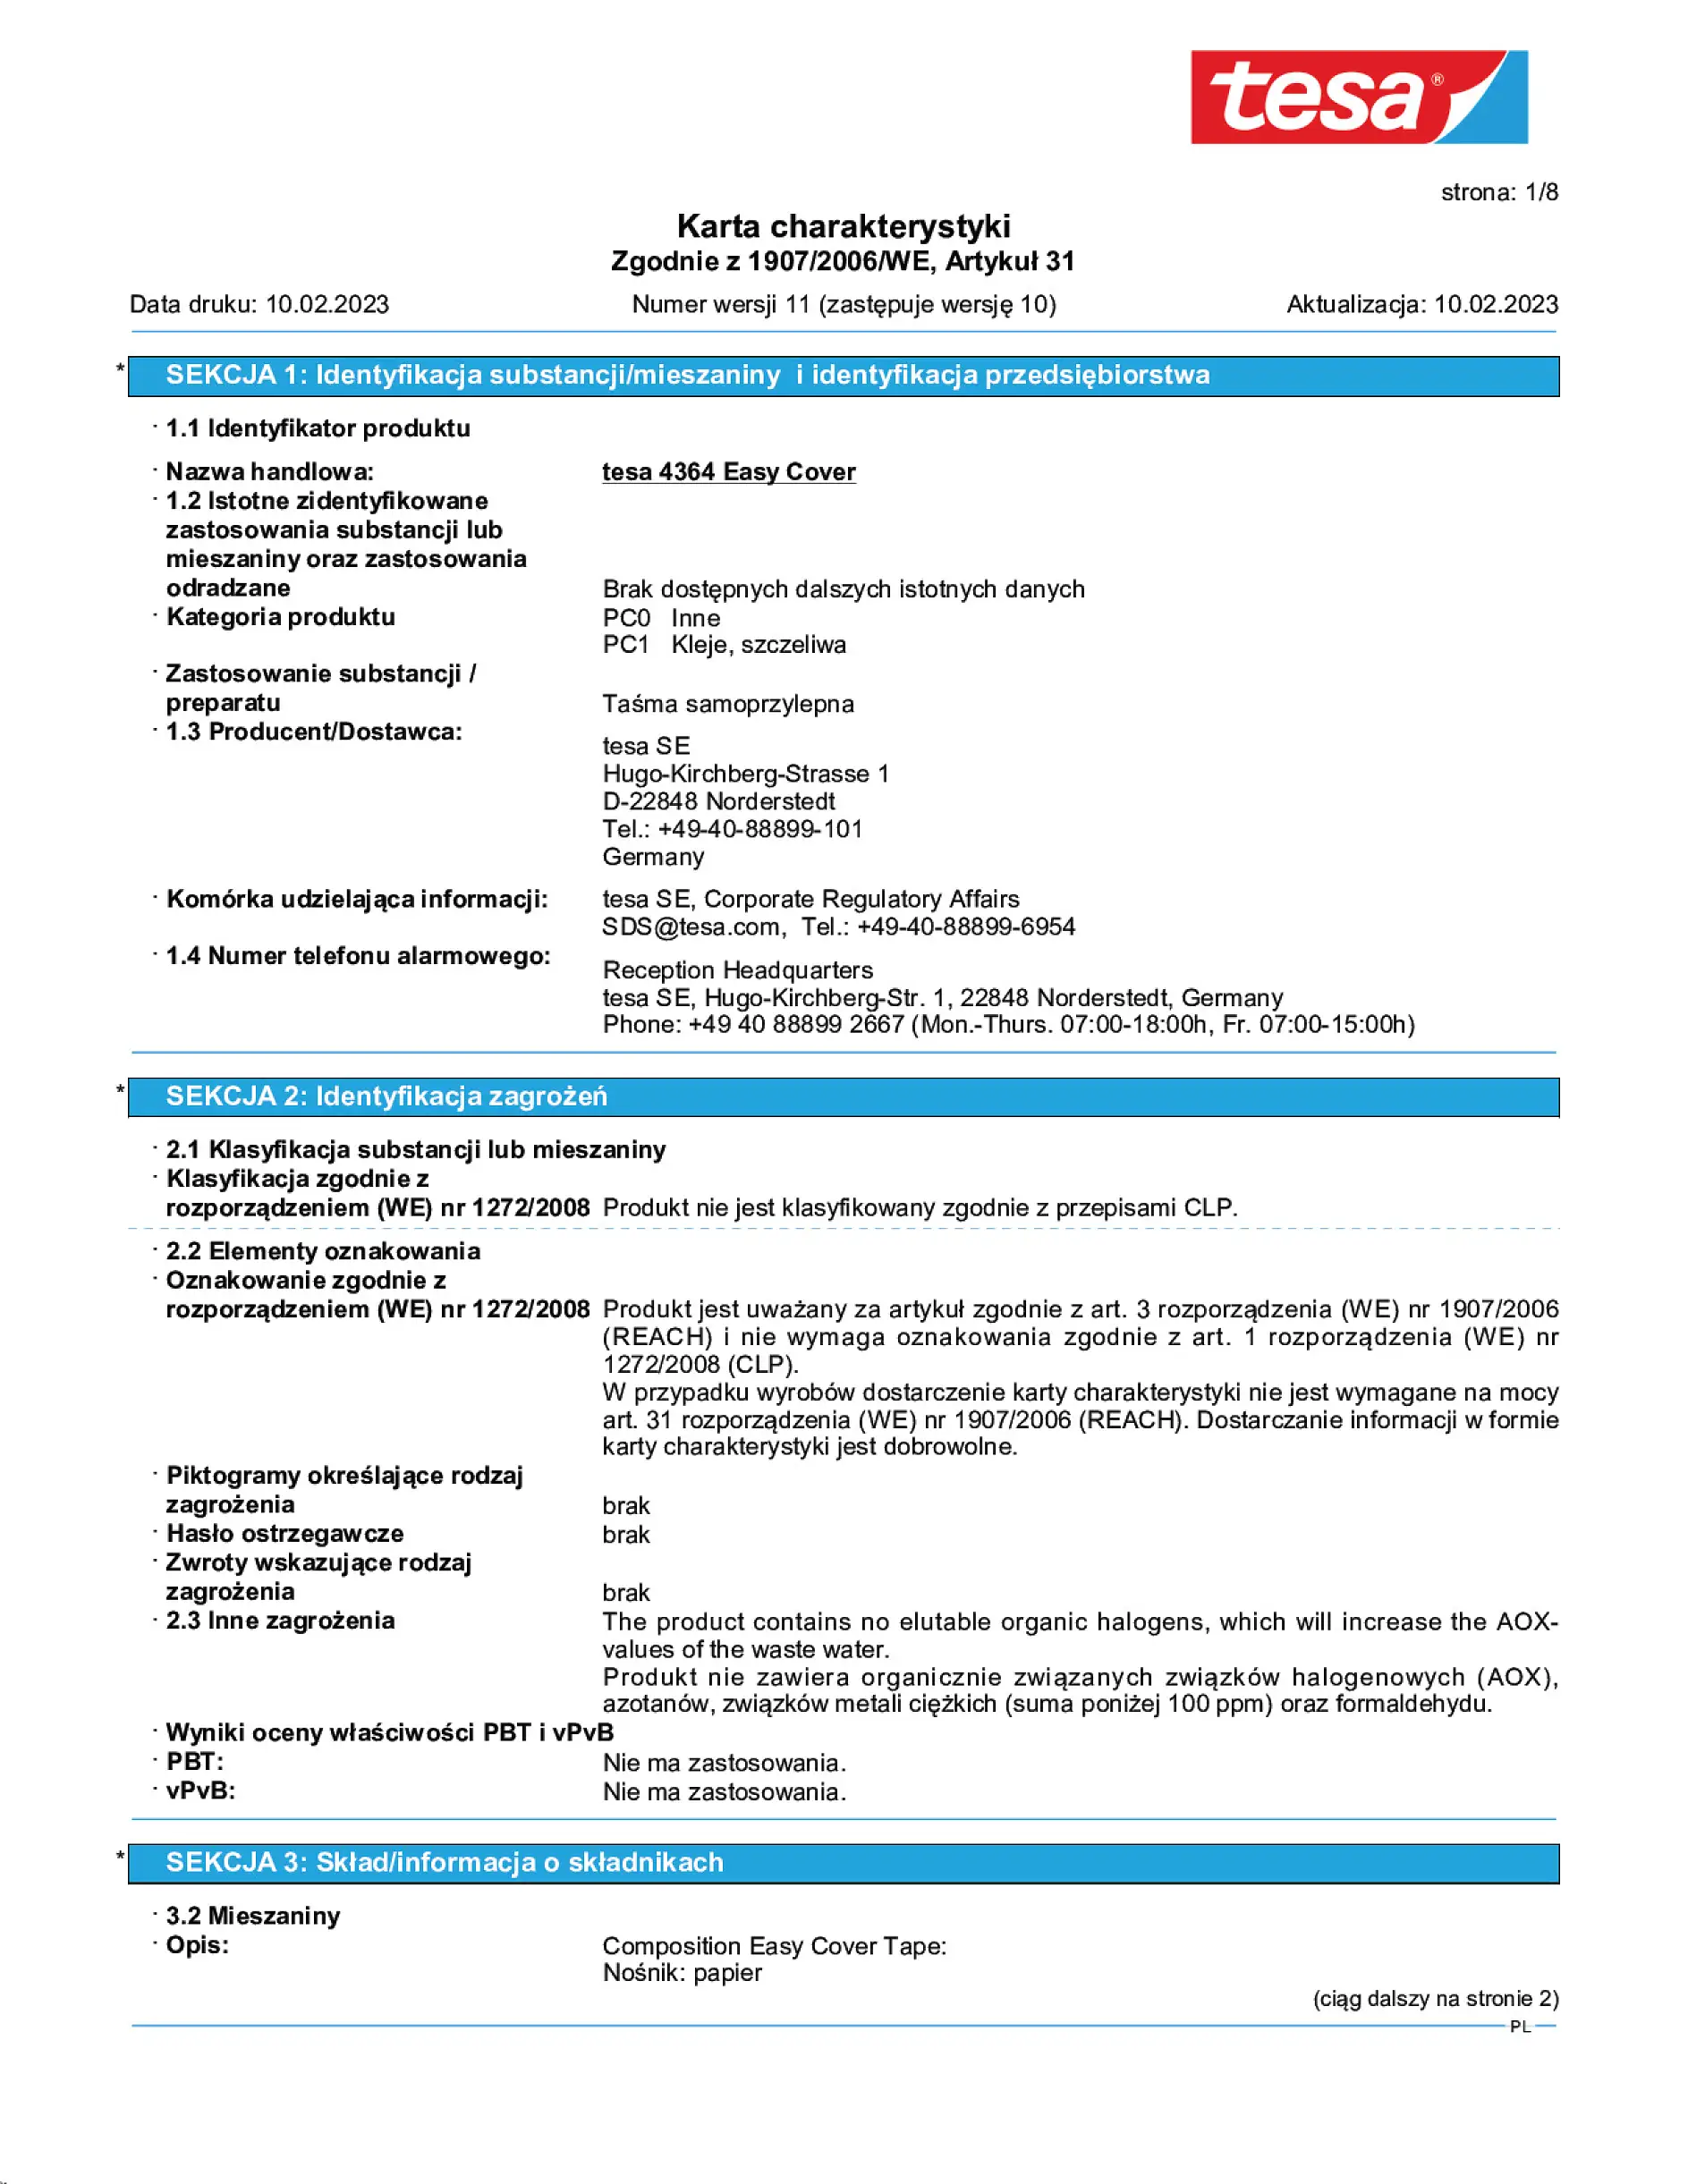 Safety data sheet_tesa® Professional 04364_pl-PL_v11